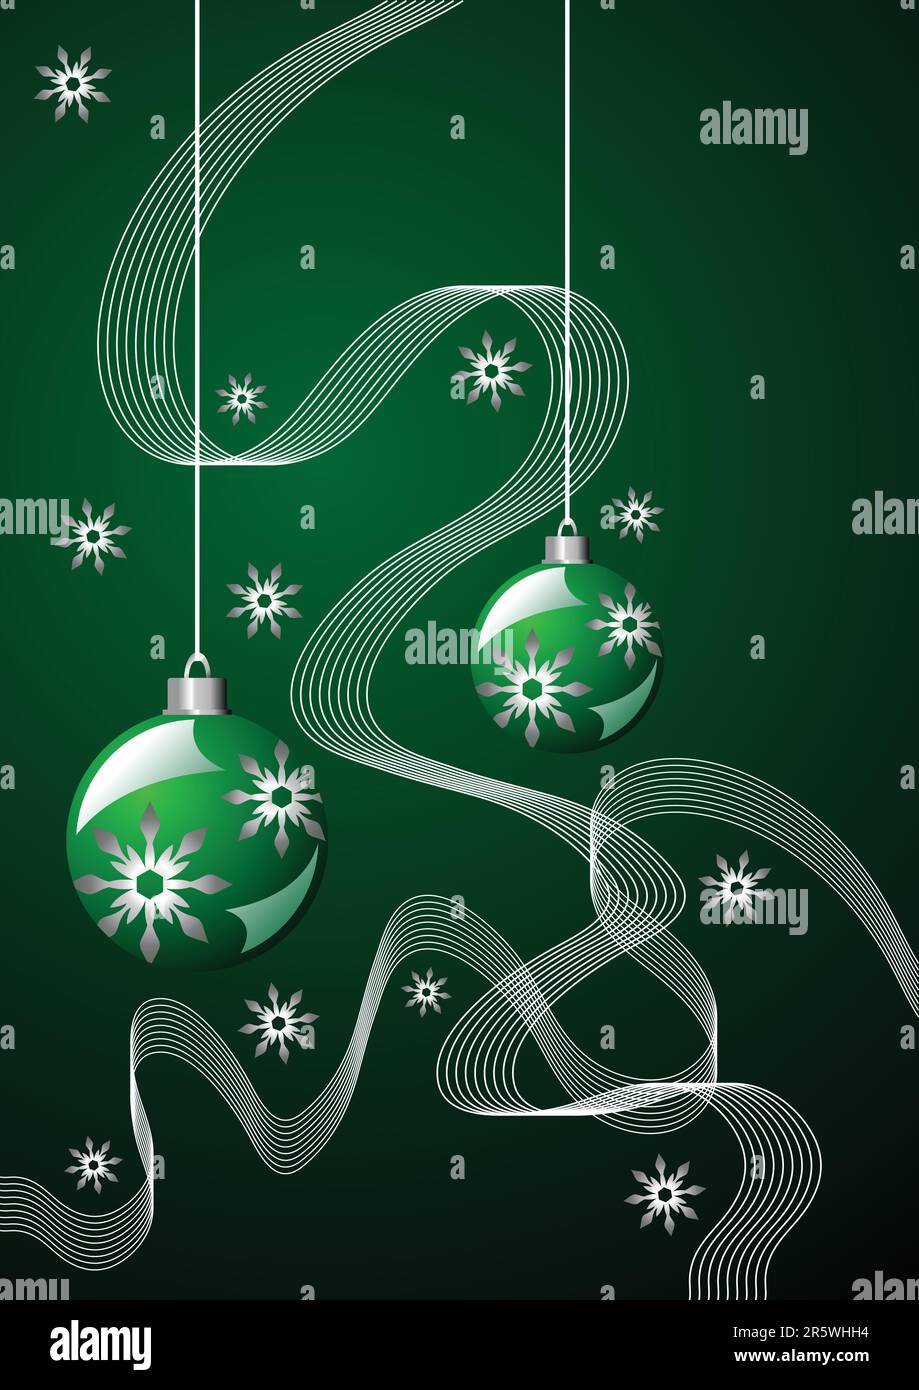 Schneekristalle Bänder und Weihnachtsbälle über Grün Stock Vektor